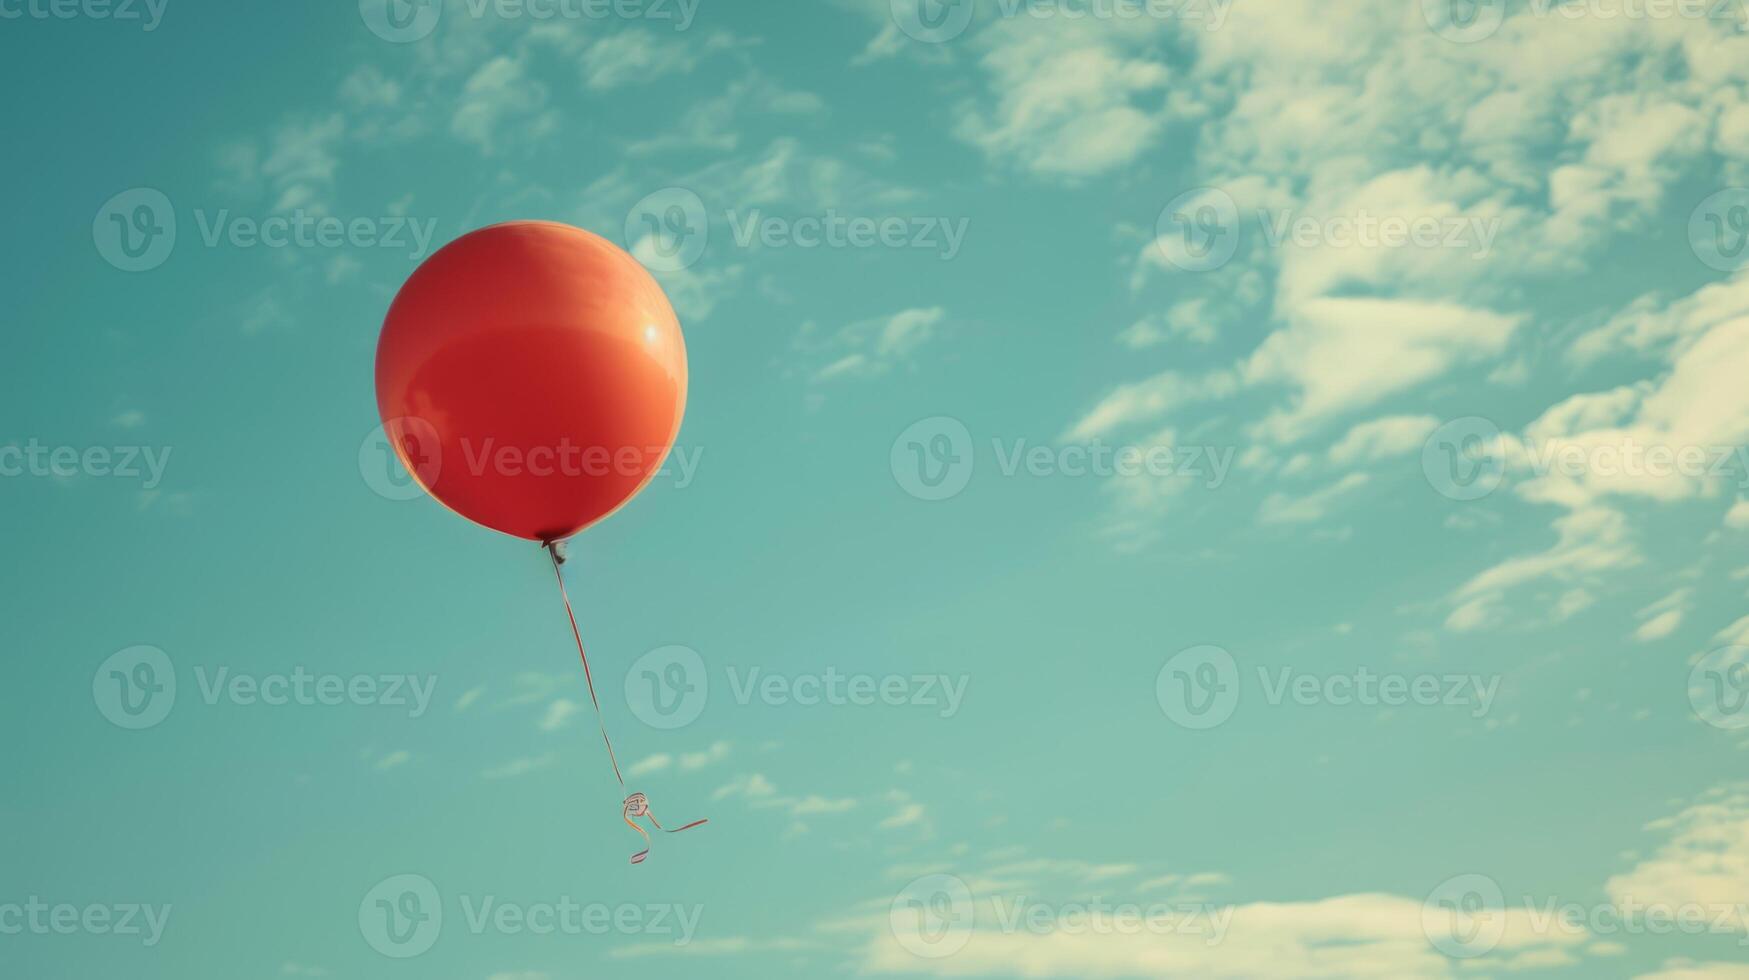 AI generated A balloon symbolizing celebration or freedom photo